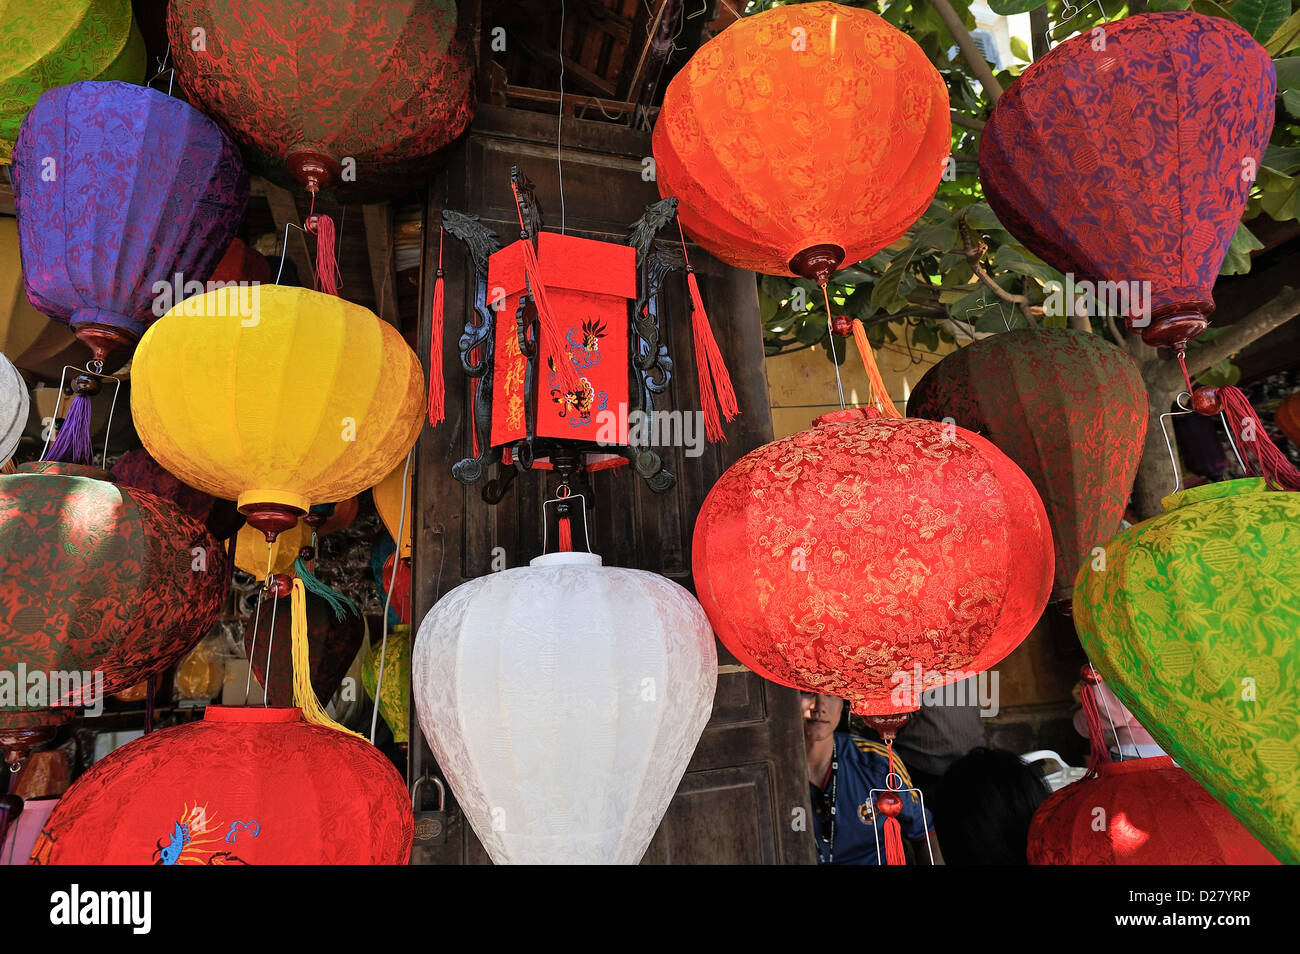 Lanternes suspendues dans boutique, Hoi An, Vietnam Banque D'Images